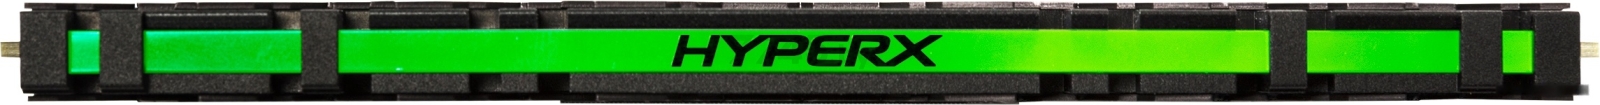 Оперативная память HYPERX Predator RGB 8GB DDR4 PC4-24000 (HX430C15PB3A/8) - Фото 4